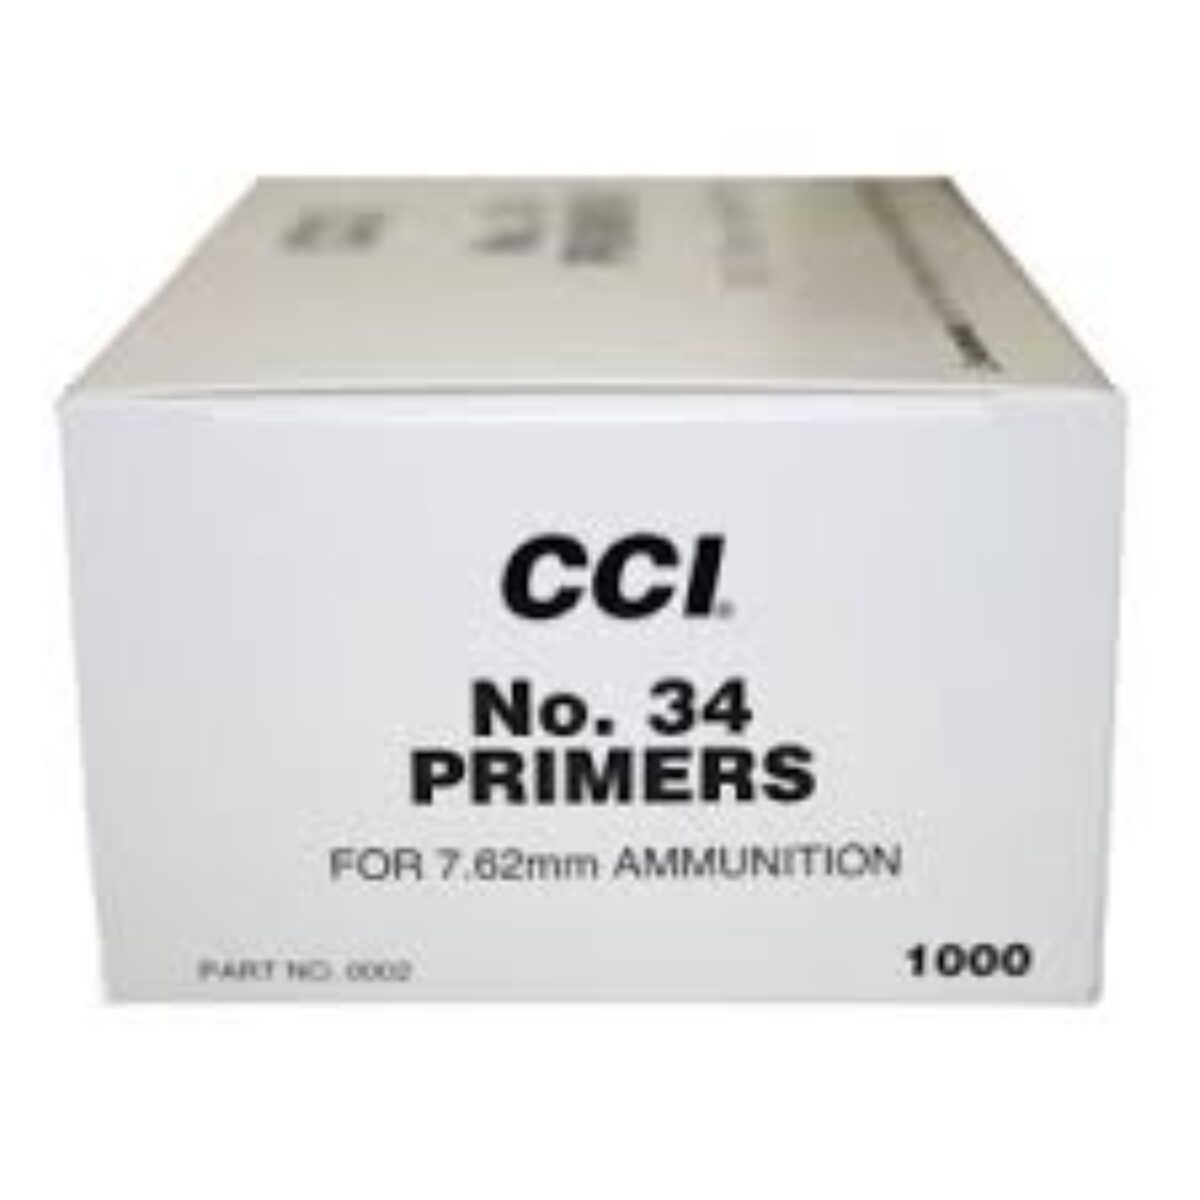 cci 34 primers| cci 34| cci 34 primers in stock| BUY